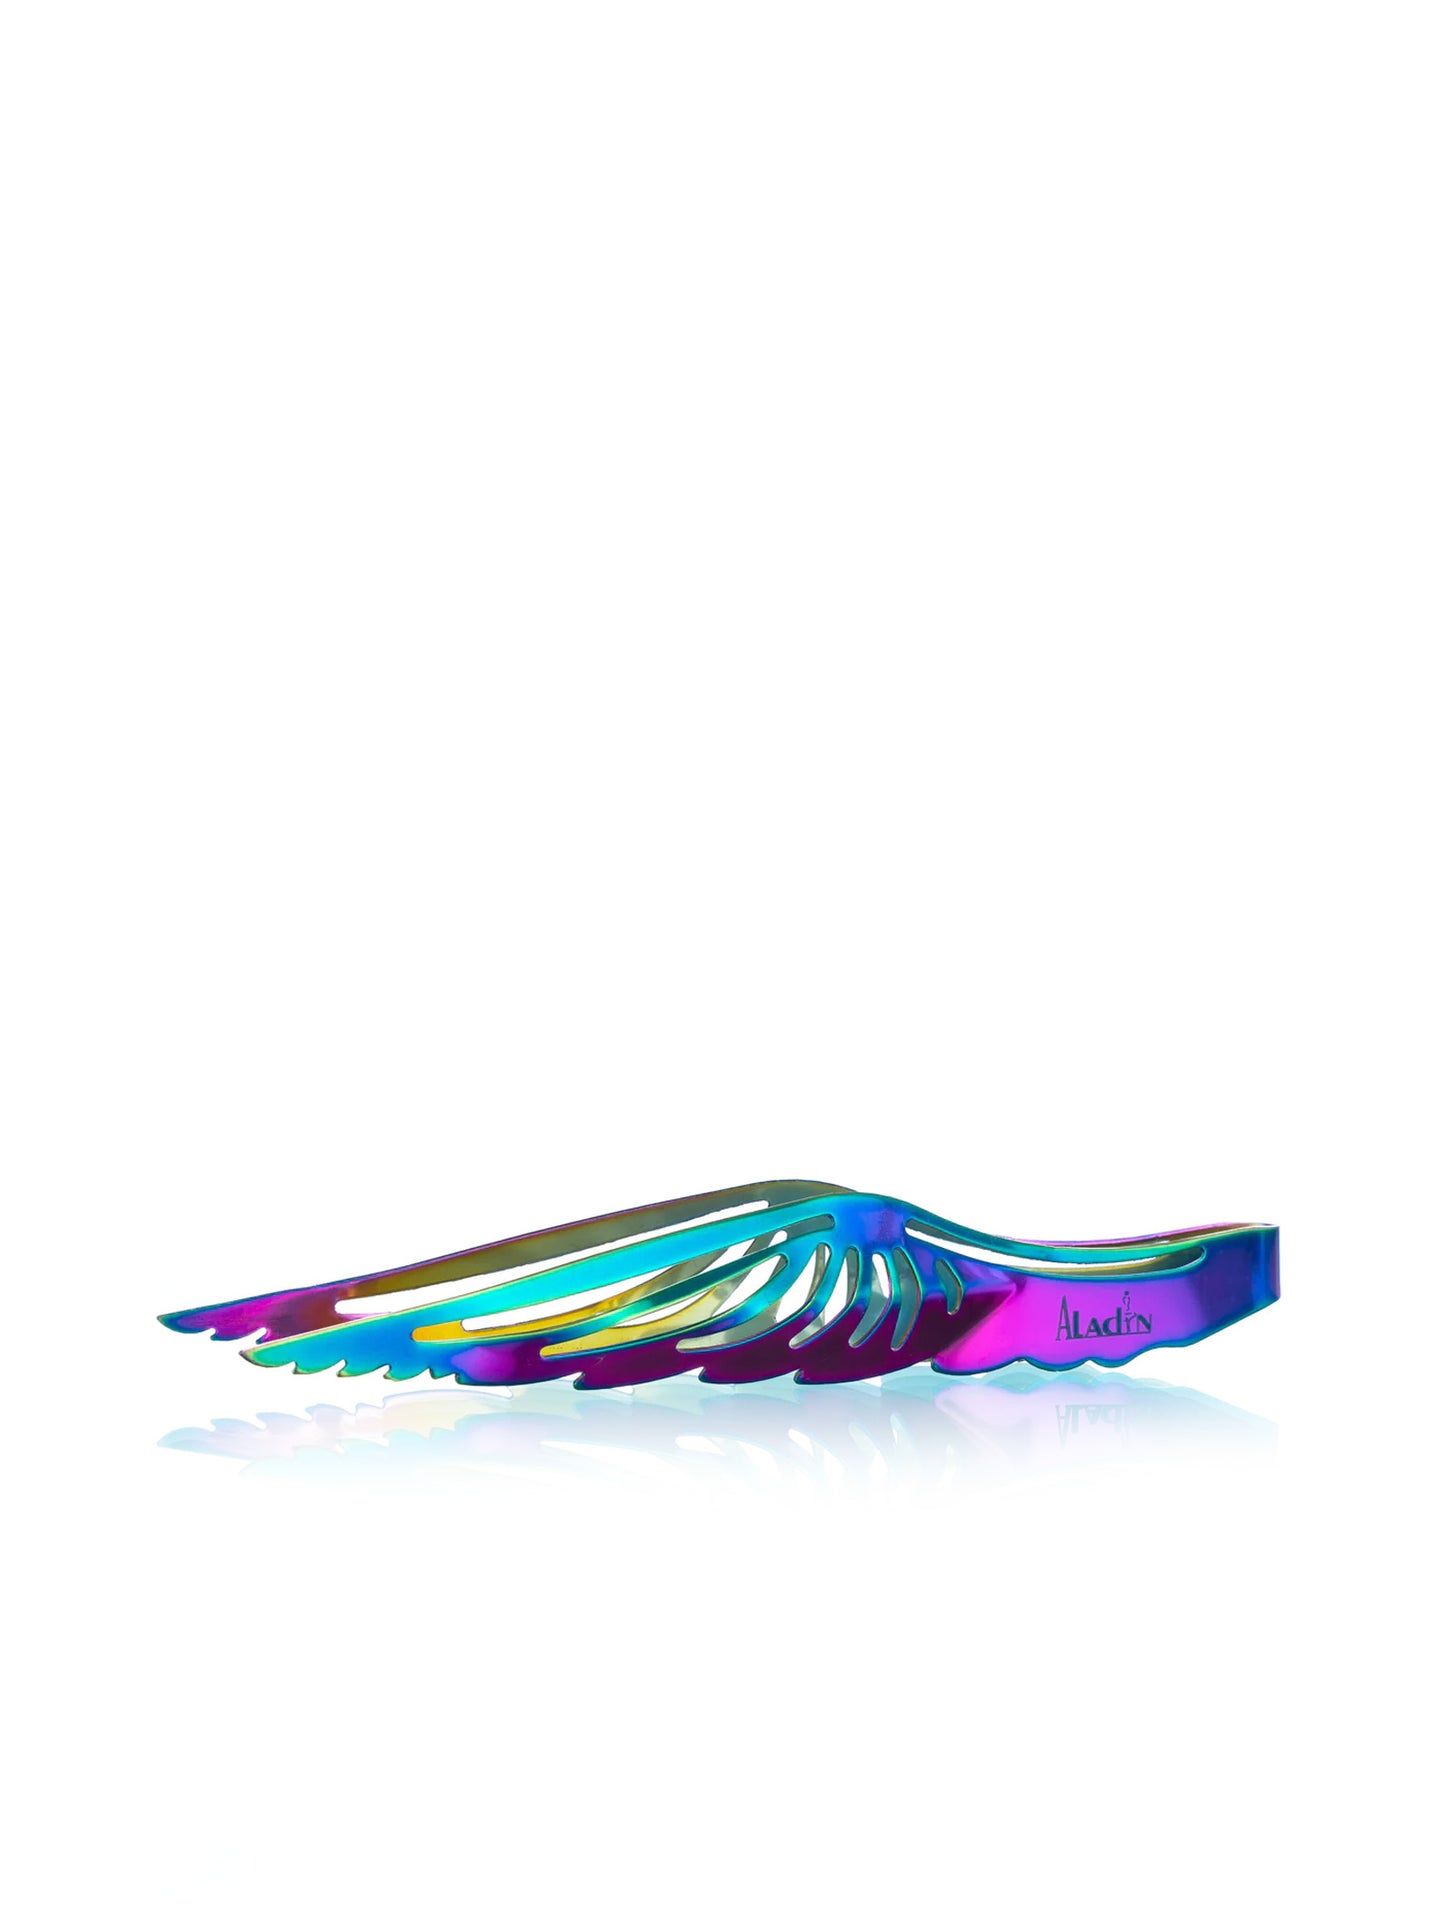 Shisha Hookah Rainbow Wing Tongs